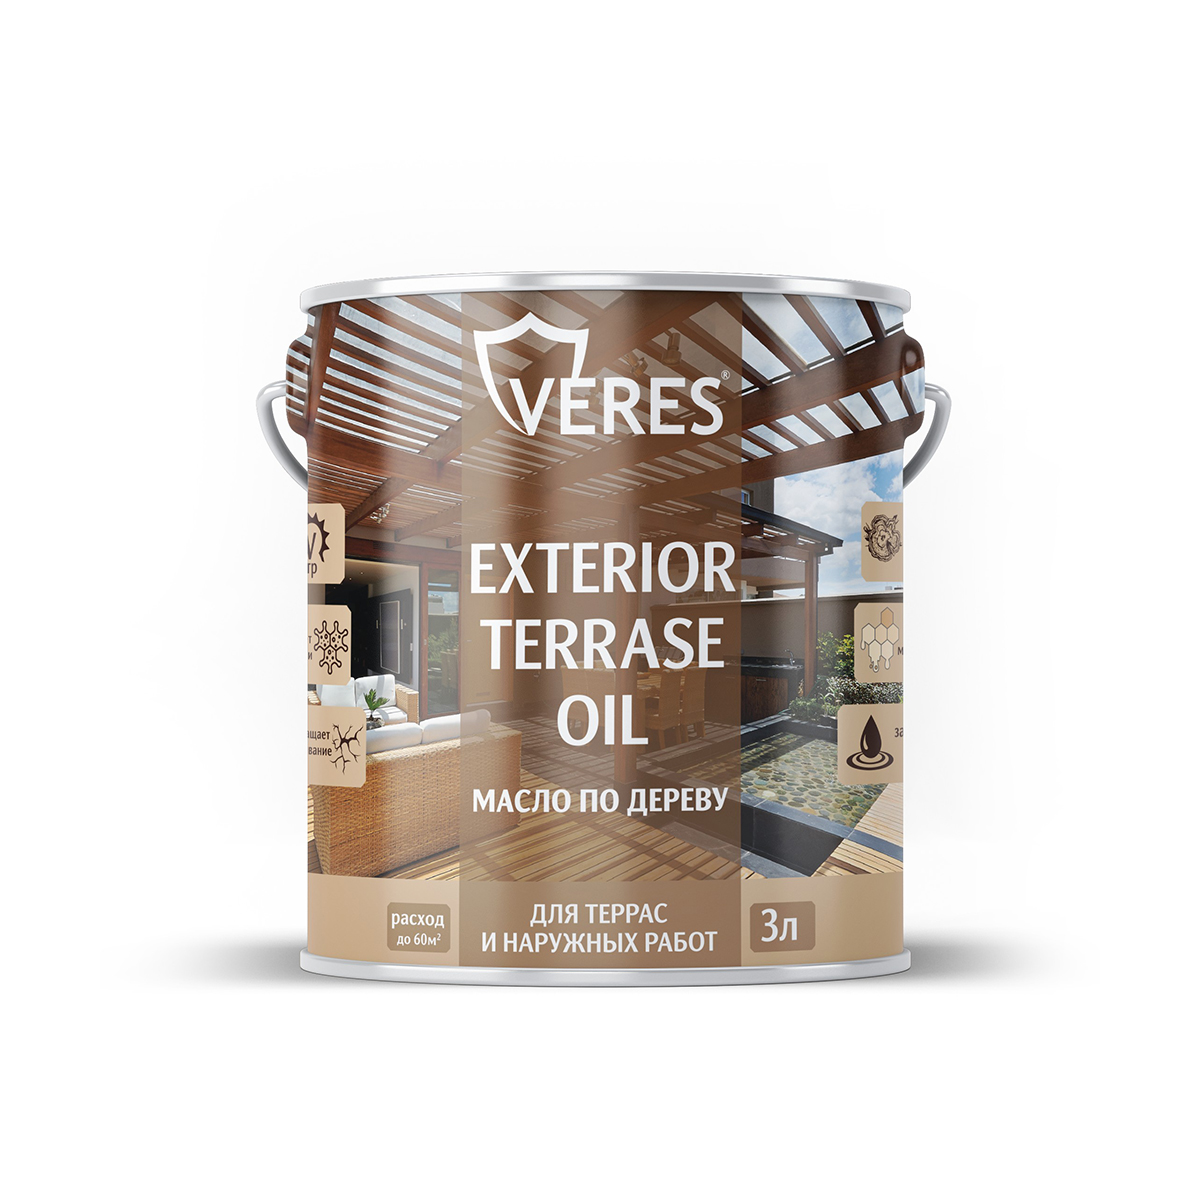 Масло для дерева Veres Exterior Terrase Oil, 3 л, тик масло детское для тела после купания 115мл